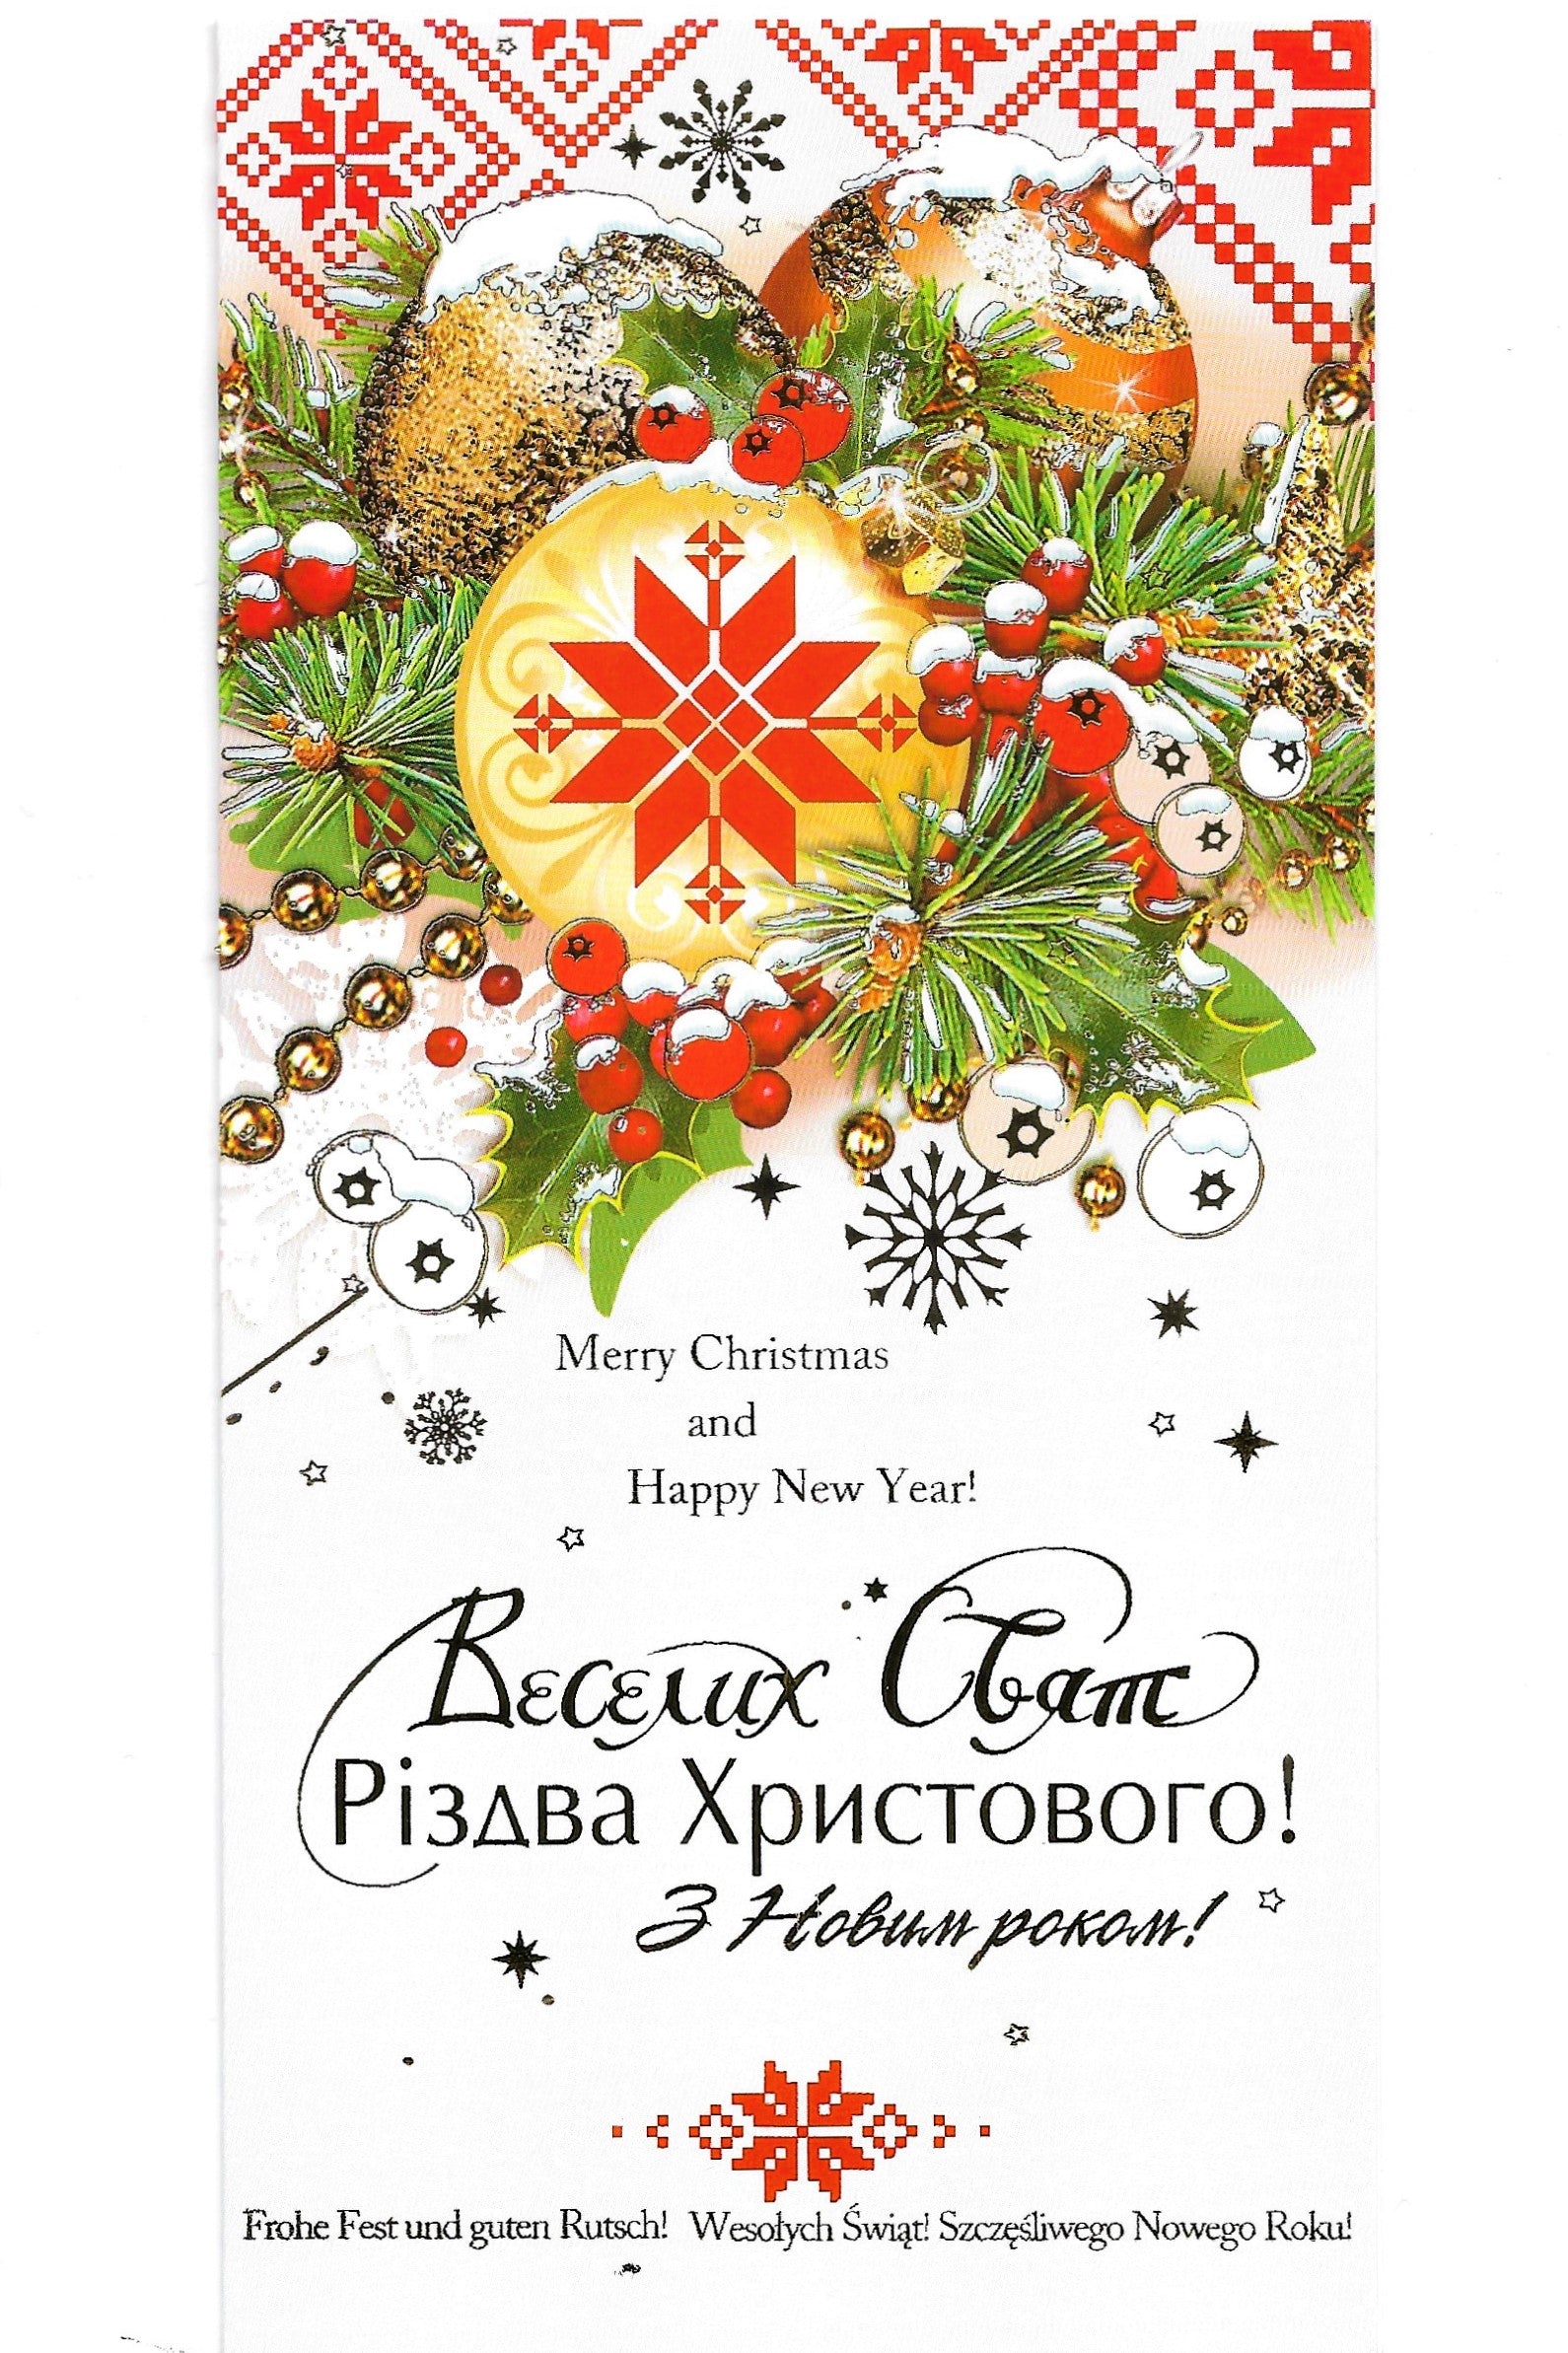 Ukrainian Christmas Card "Holly"